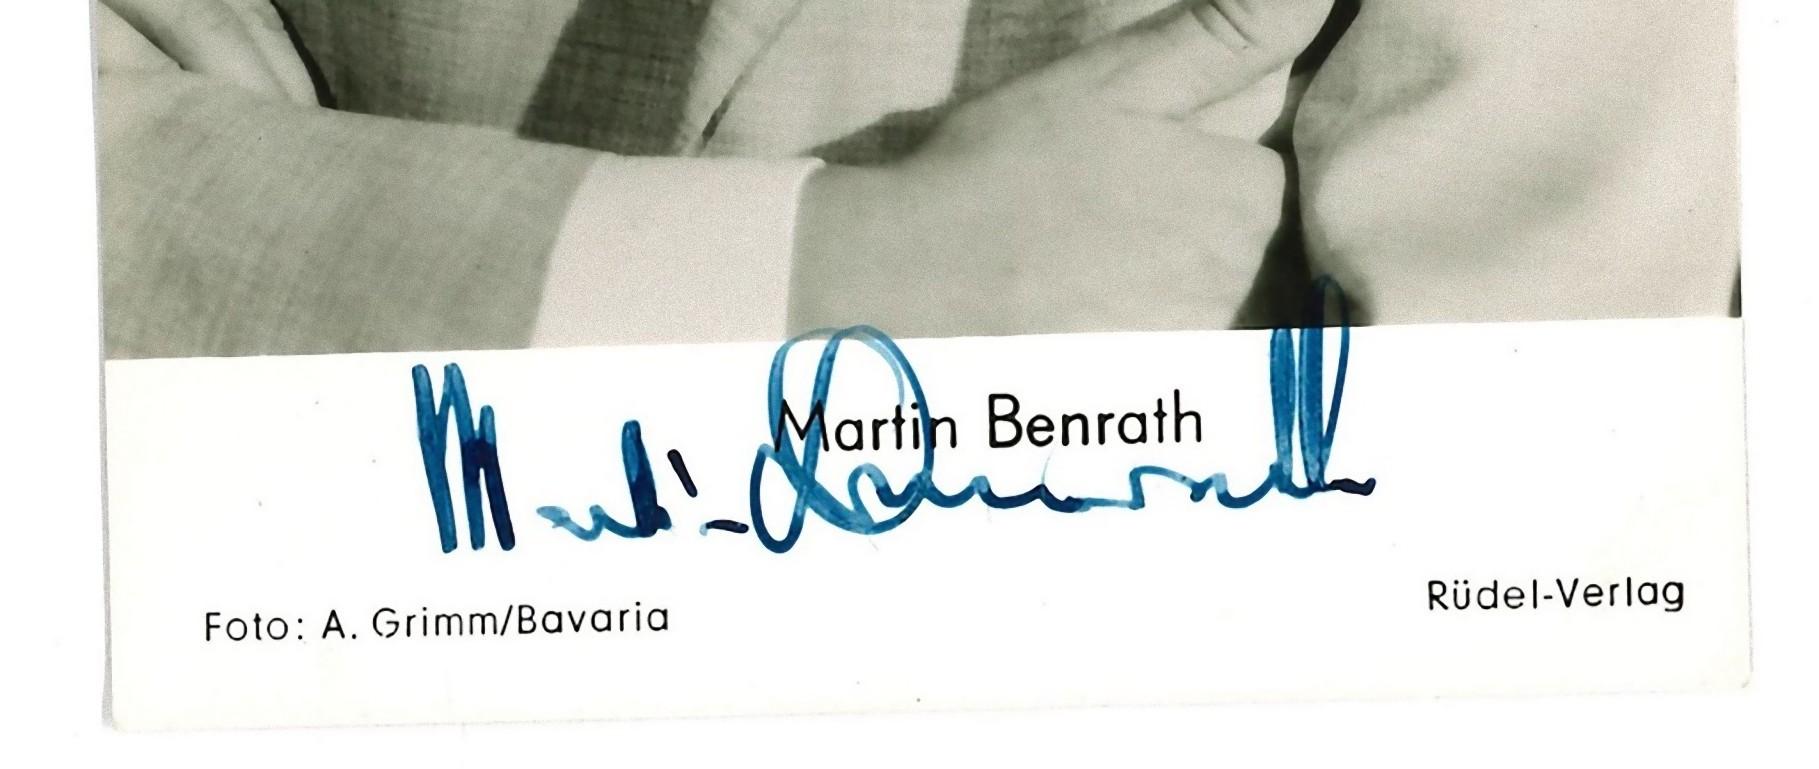 Autographisches Porträt von Martin Benrath - Vintage b/w Postcard -1959 – Photograph von Unknown